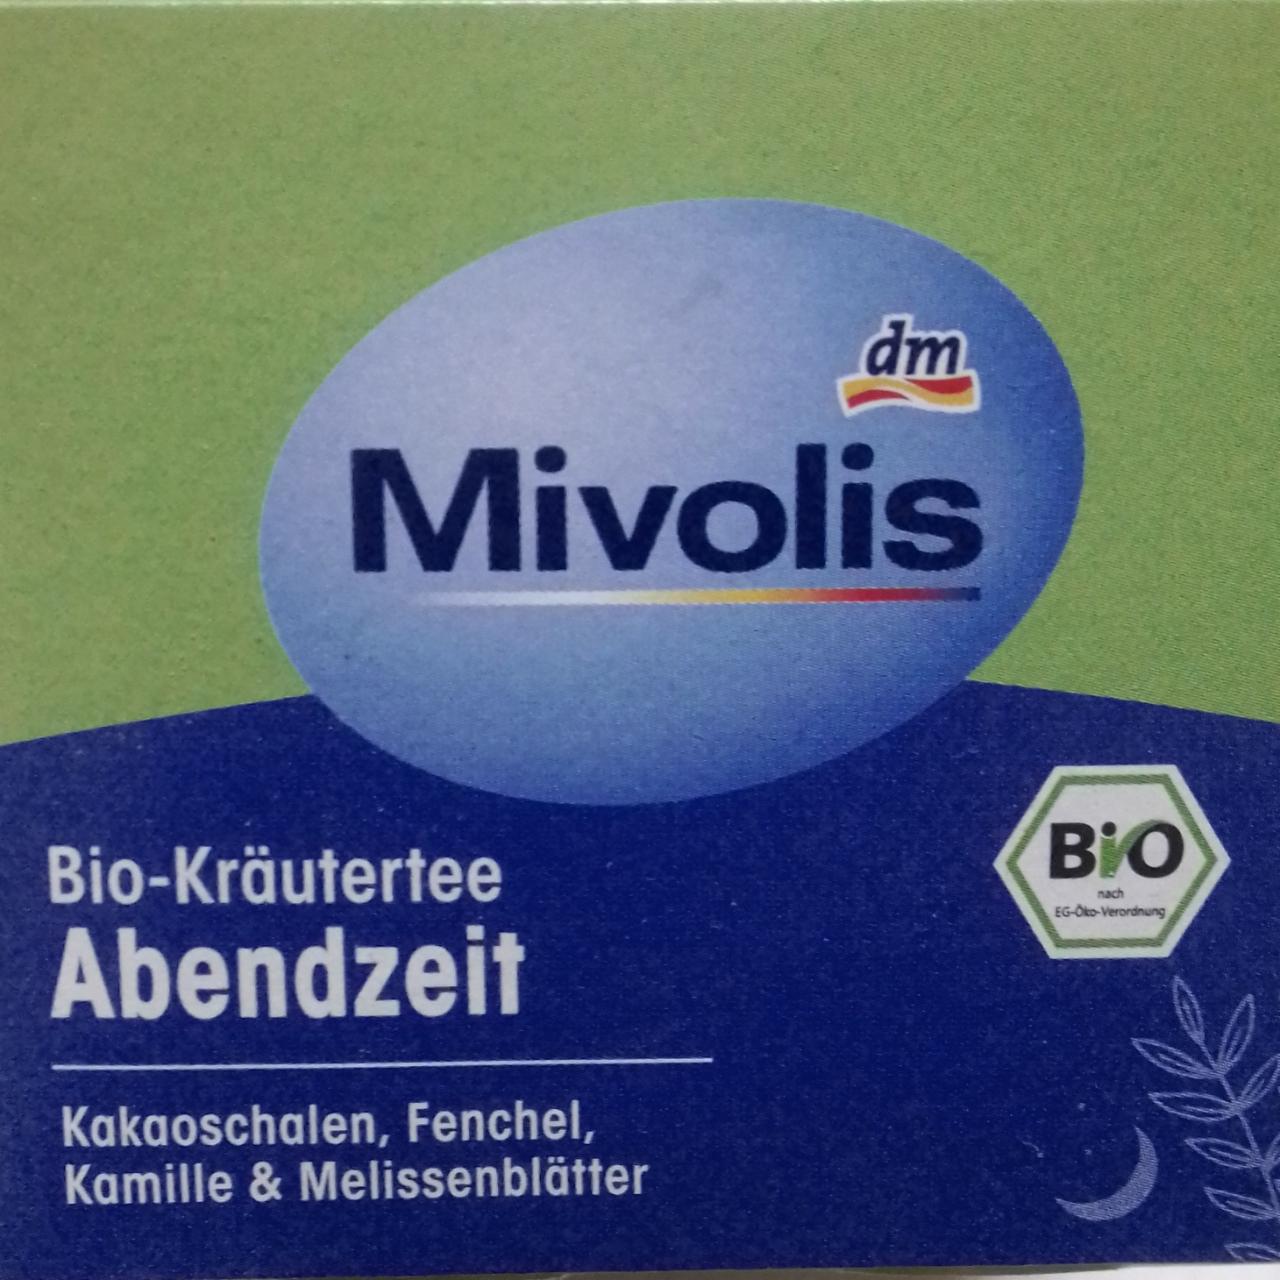 Fotografie - Bio-Kräutertee Abendzeit Mivolis